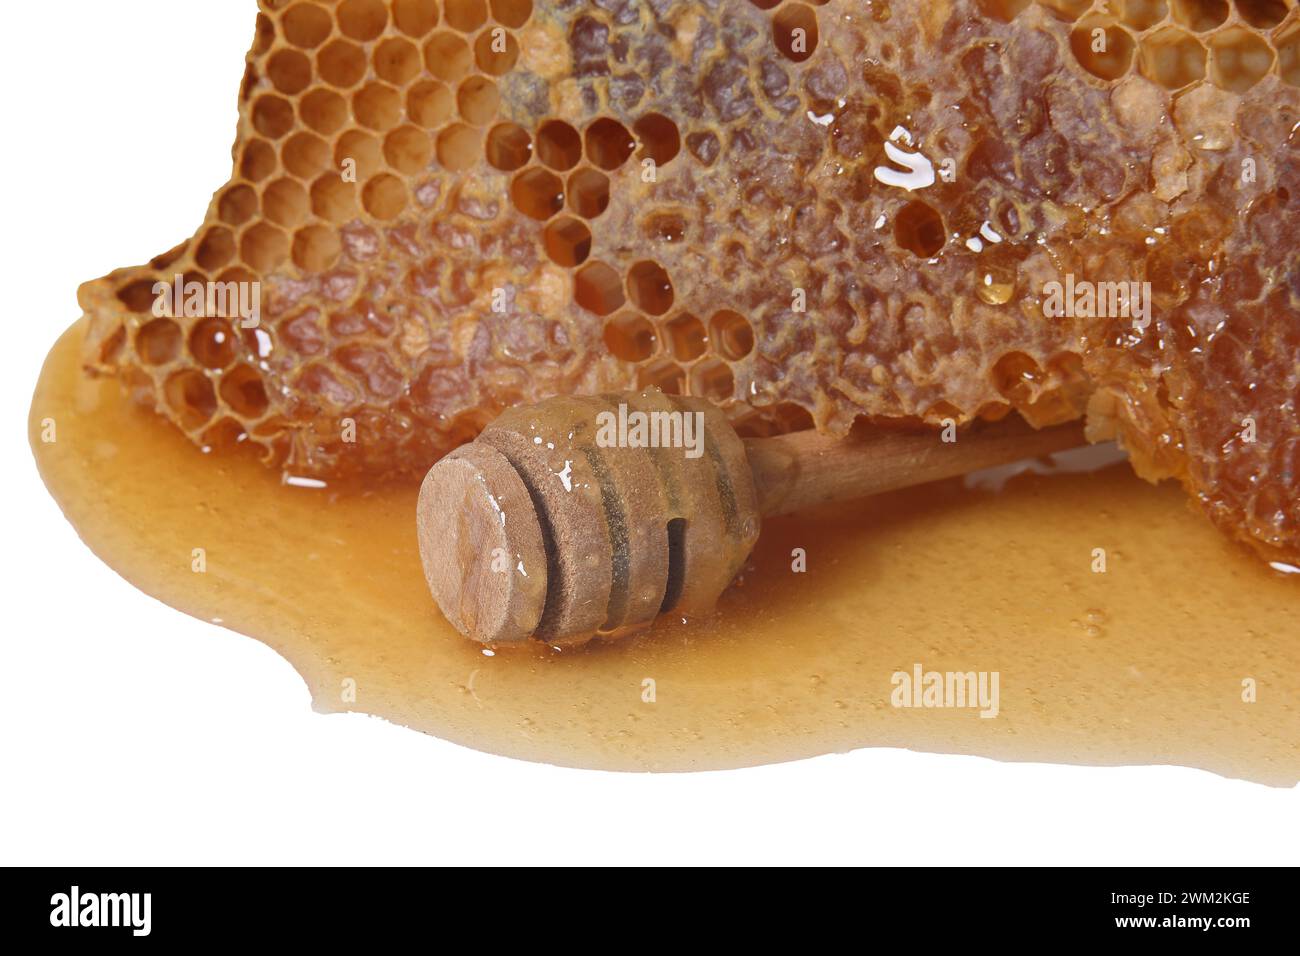 Honey and honeycomb on white background Stock Photo